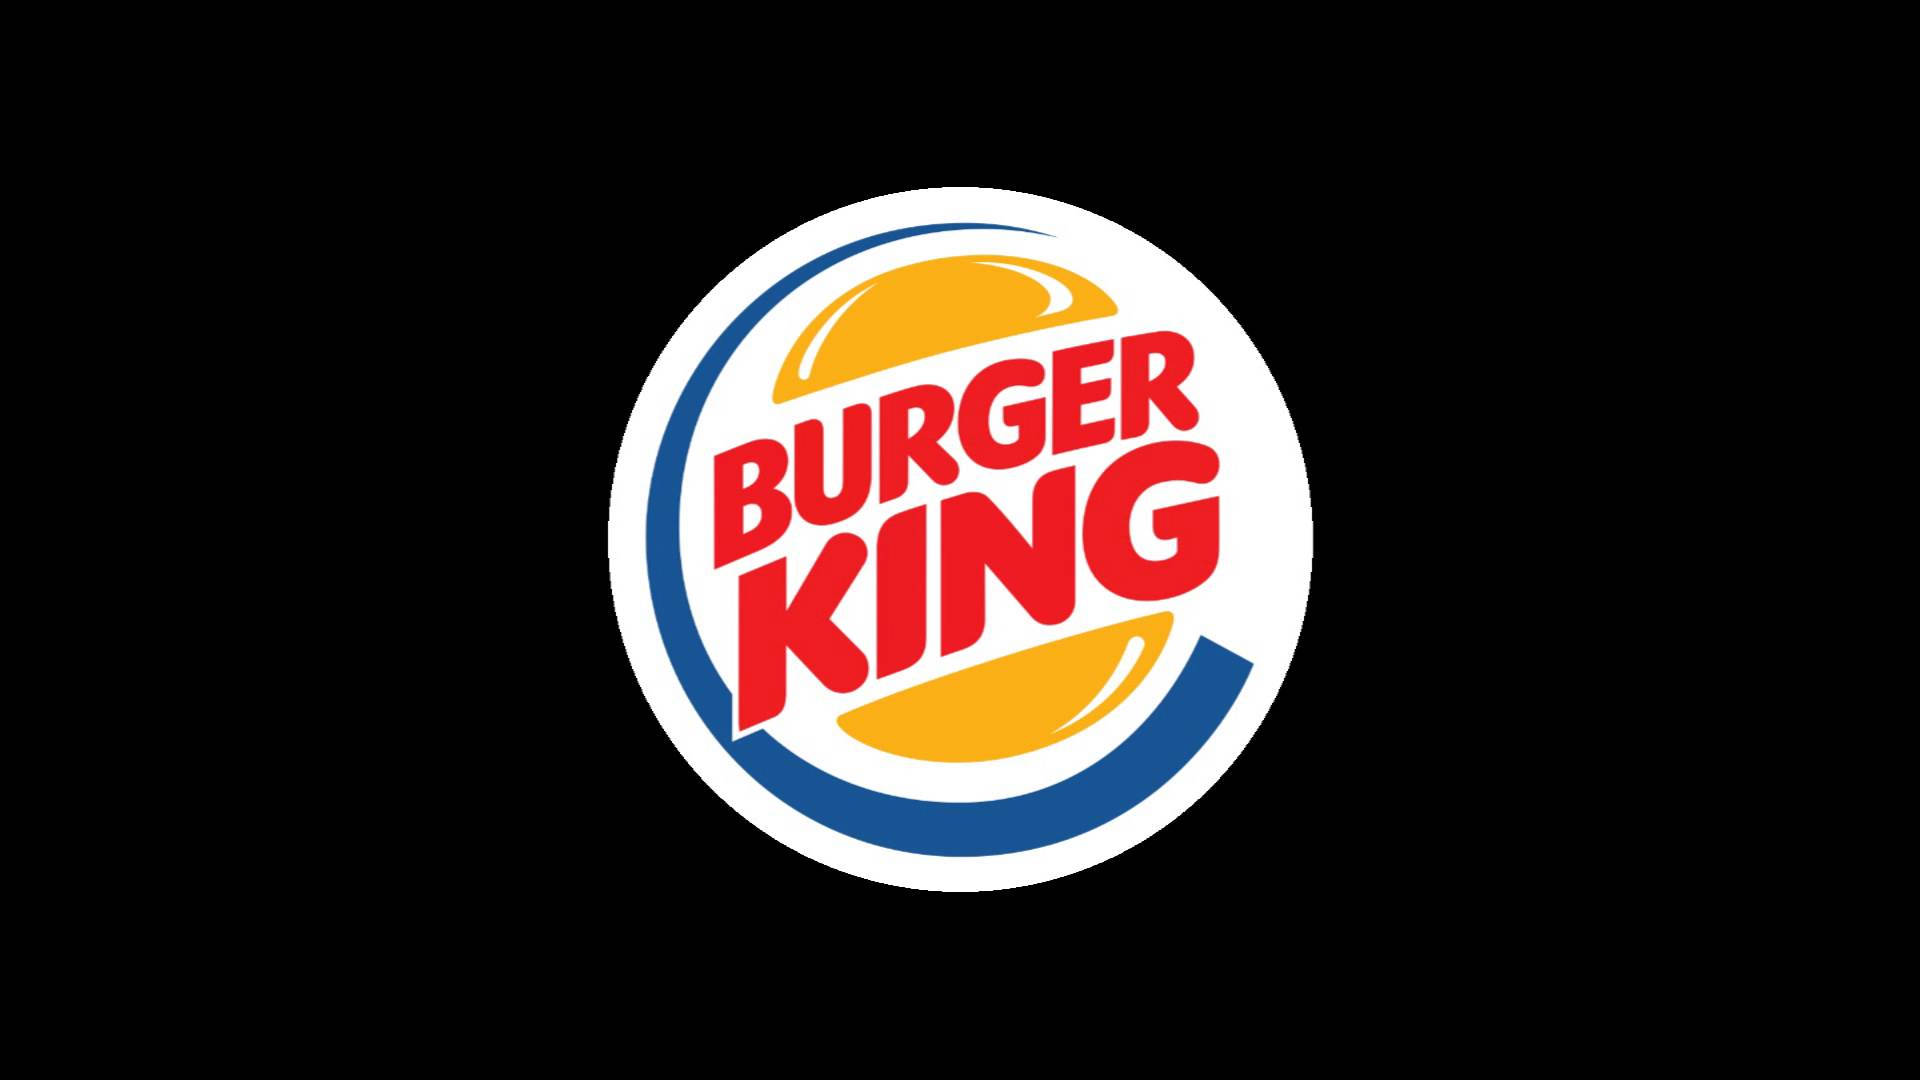 Burger King Logo On Black